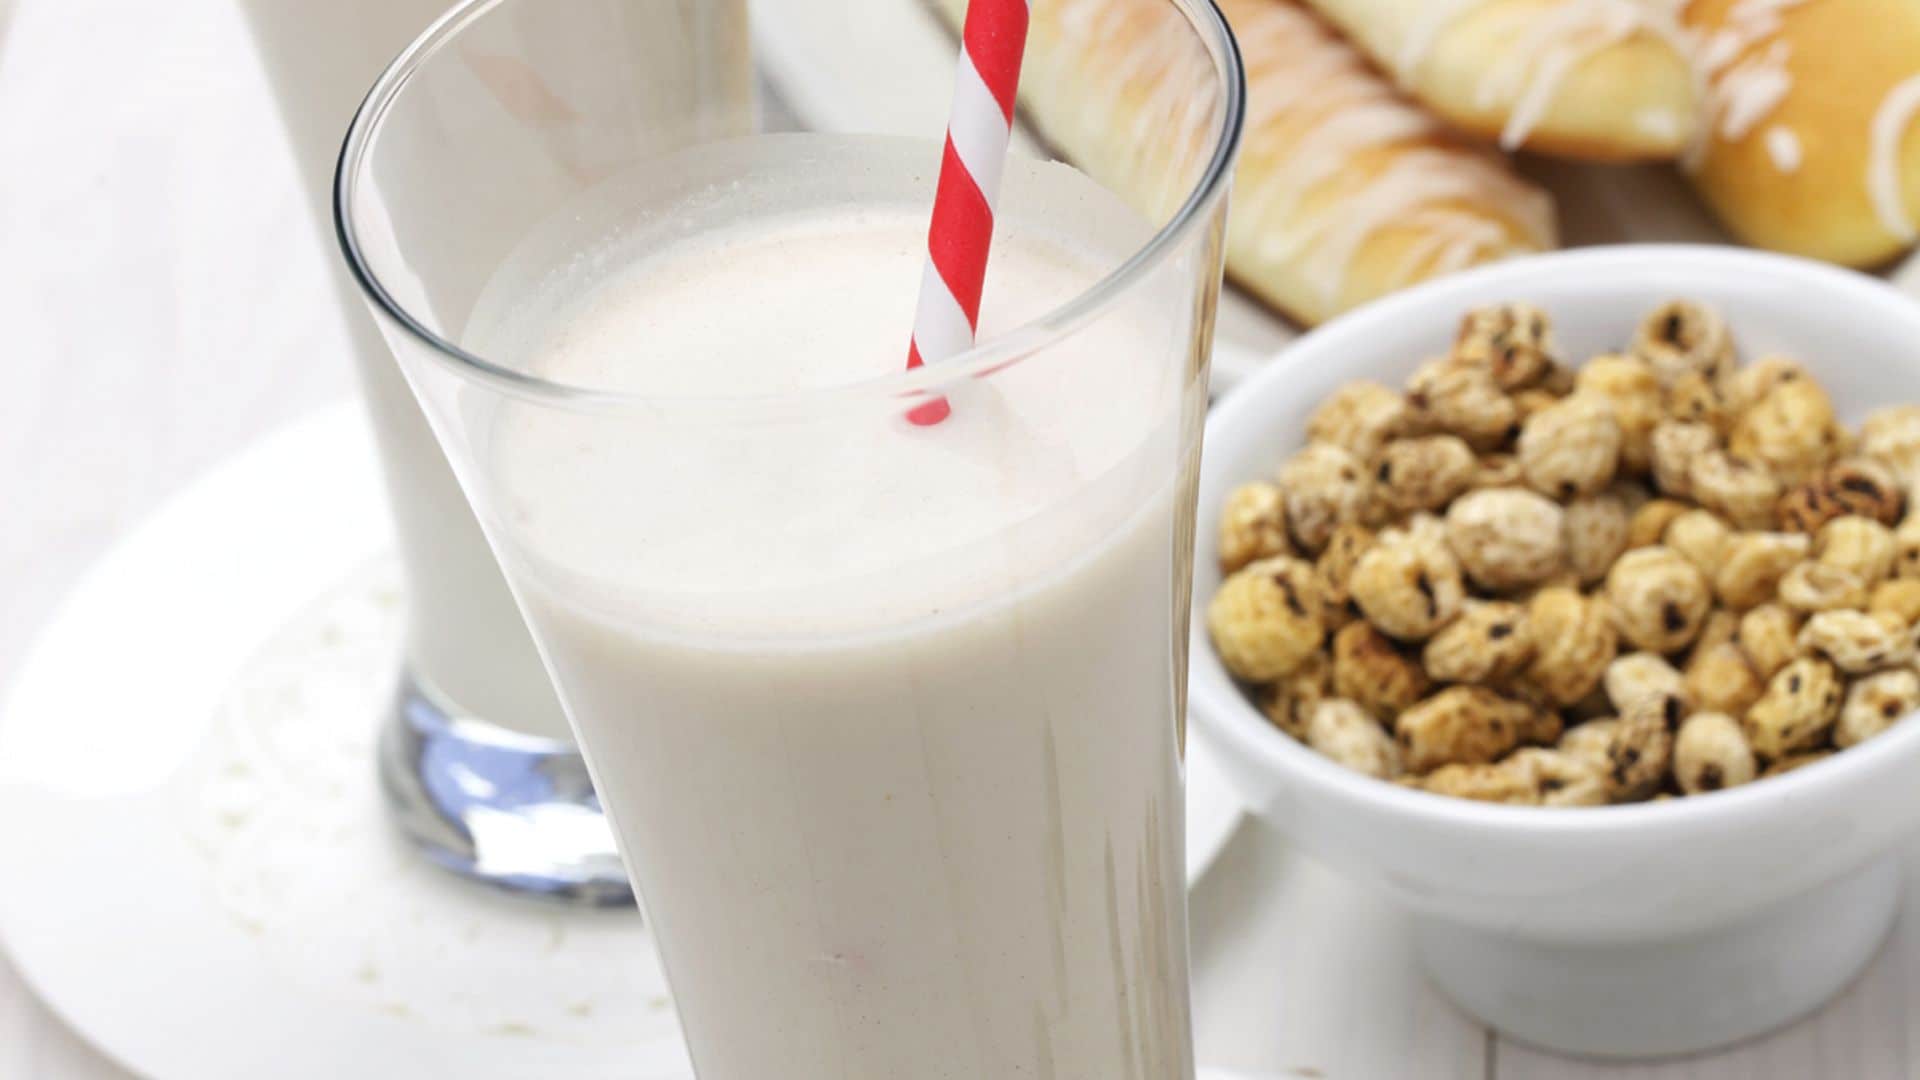 Horchata y leche merengada: dos clásicos que saben a verano